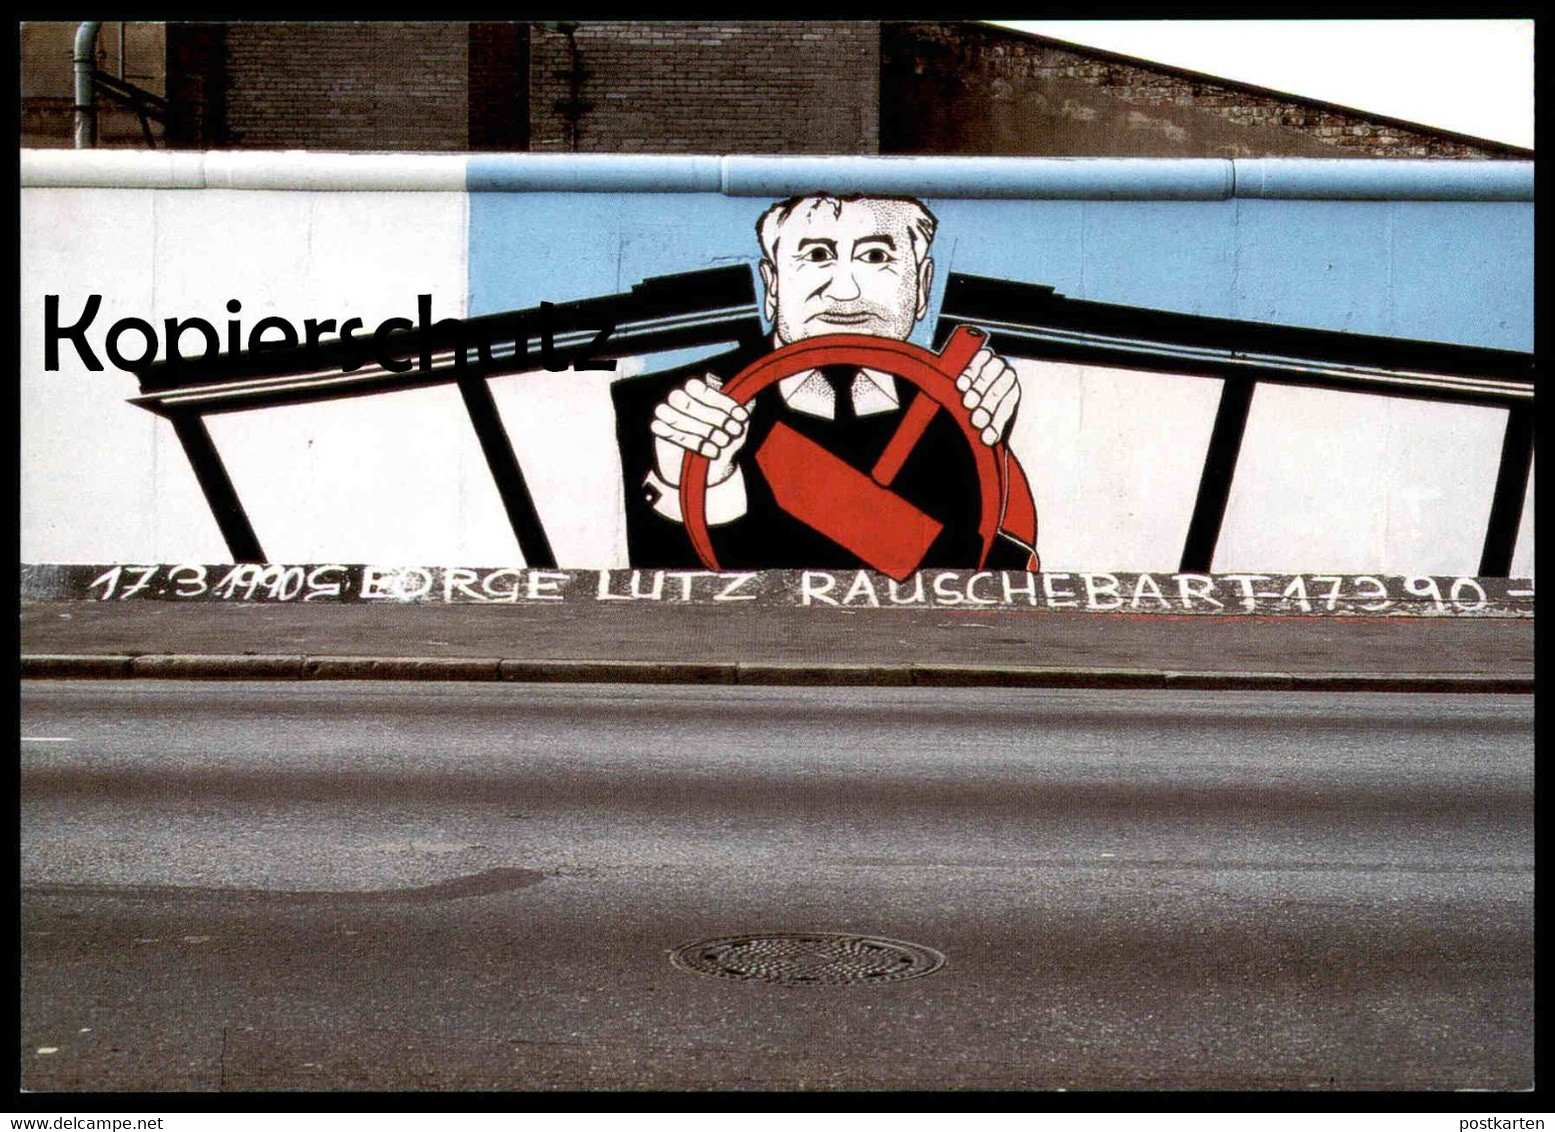 ÄLTERE POSTKARTE BERLIN GEORGE-LUTZ RAUSCHEBART BERLINER MAUER THE WALL LE MUR ART 1990 GORBATSCHOW Postcard Cpa - Berliner Mauer